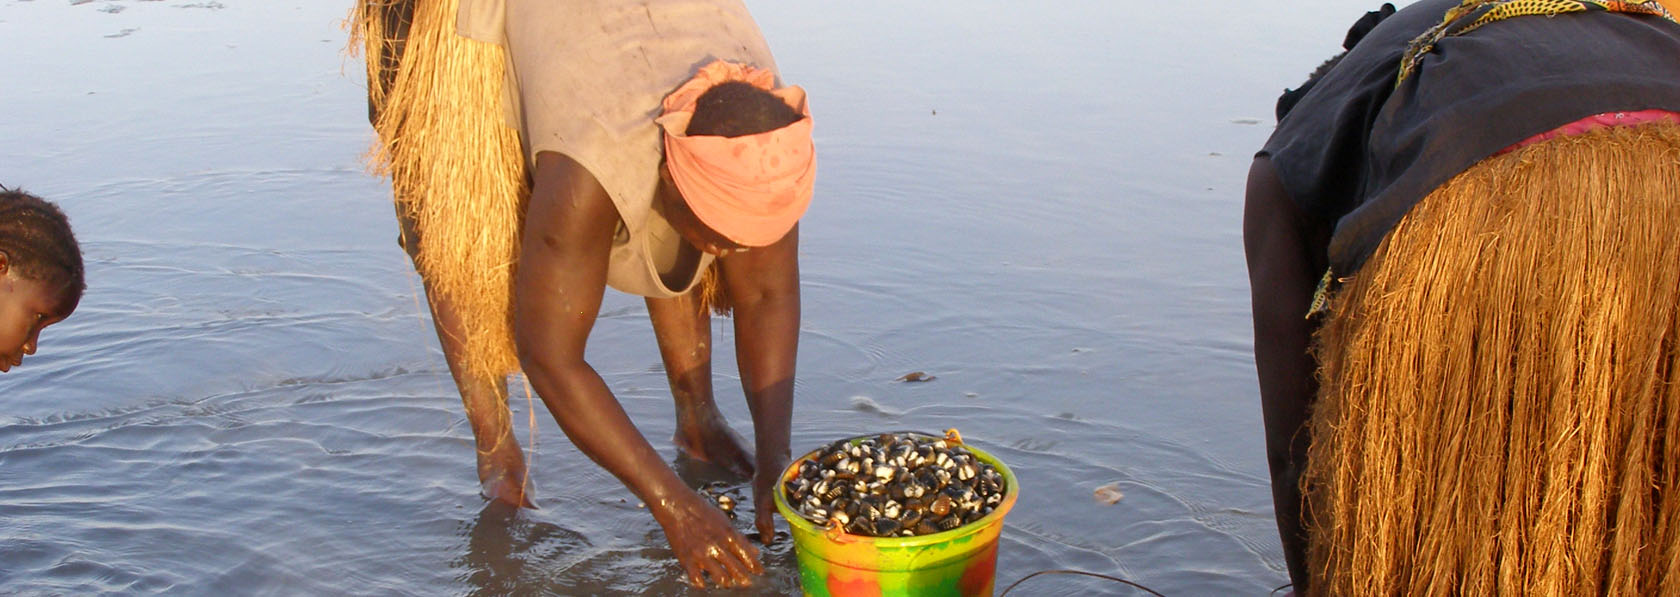 ramassage traditionnel des kombés sorte de coquillage typique de l'archipel 